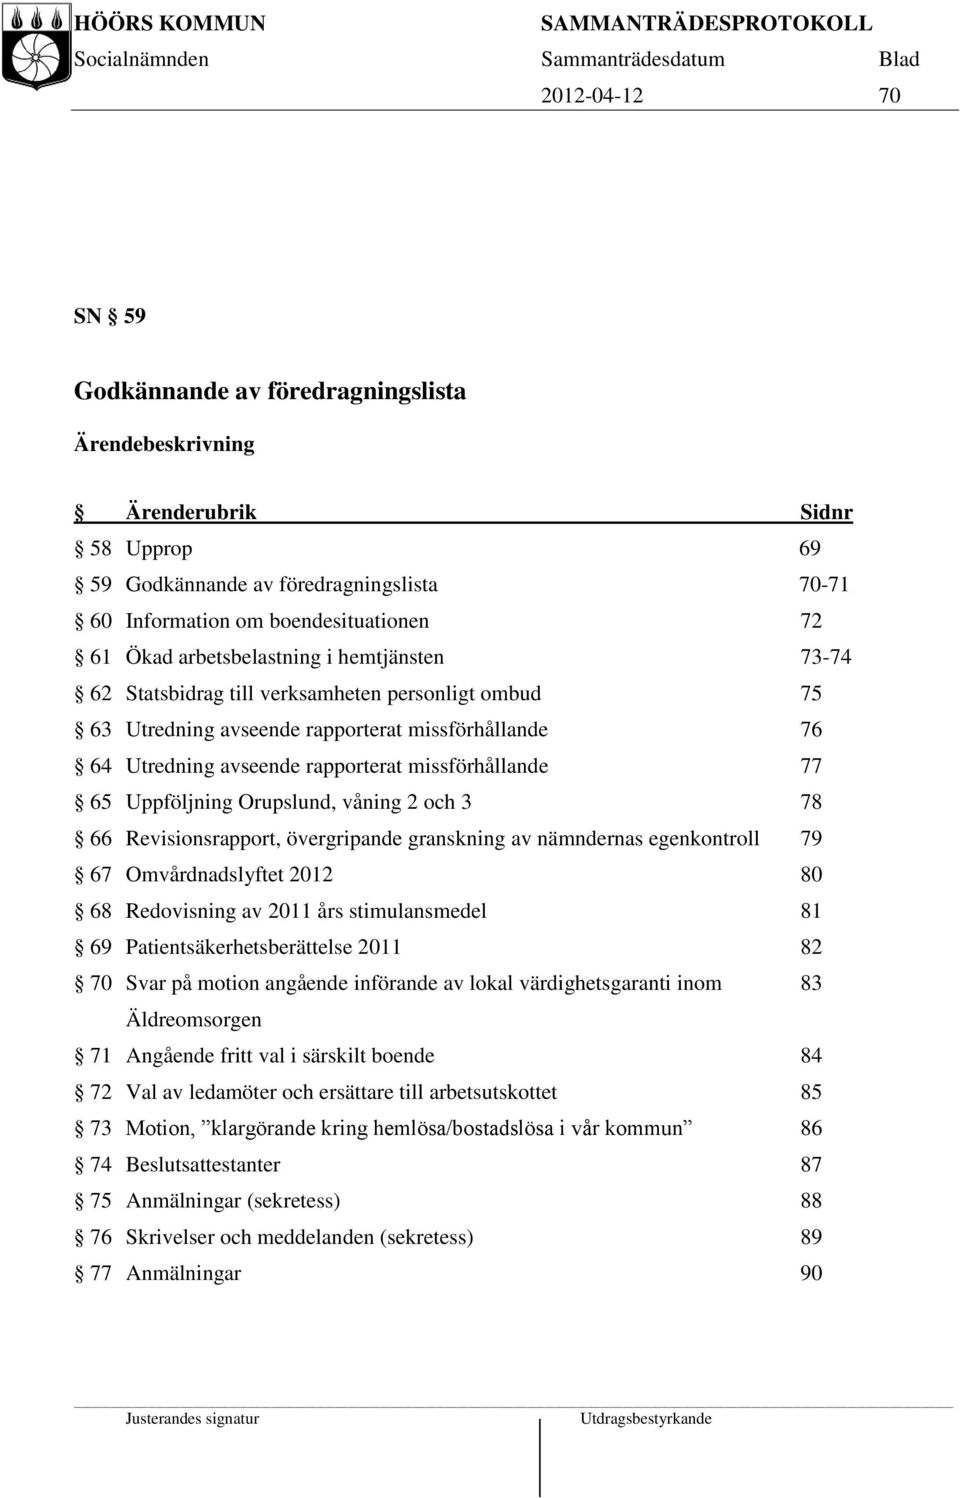 Uppföljning Orupslund, våning 2 och 3 78 66 Revisionsrapport, övergripande granskning av nämndernas egenkontroll 79 67 Omvårdnadslyftet 2012 80 68 Redovisning av 2011 års stimulansmedel 81 69